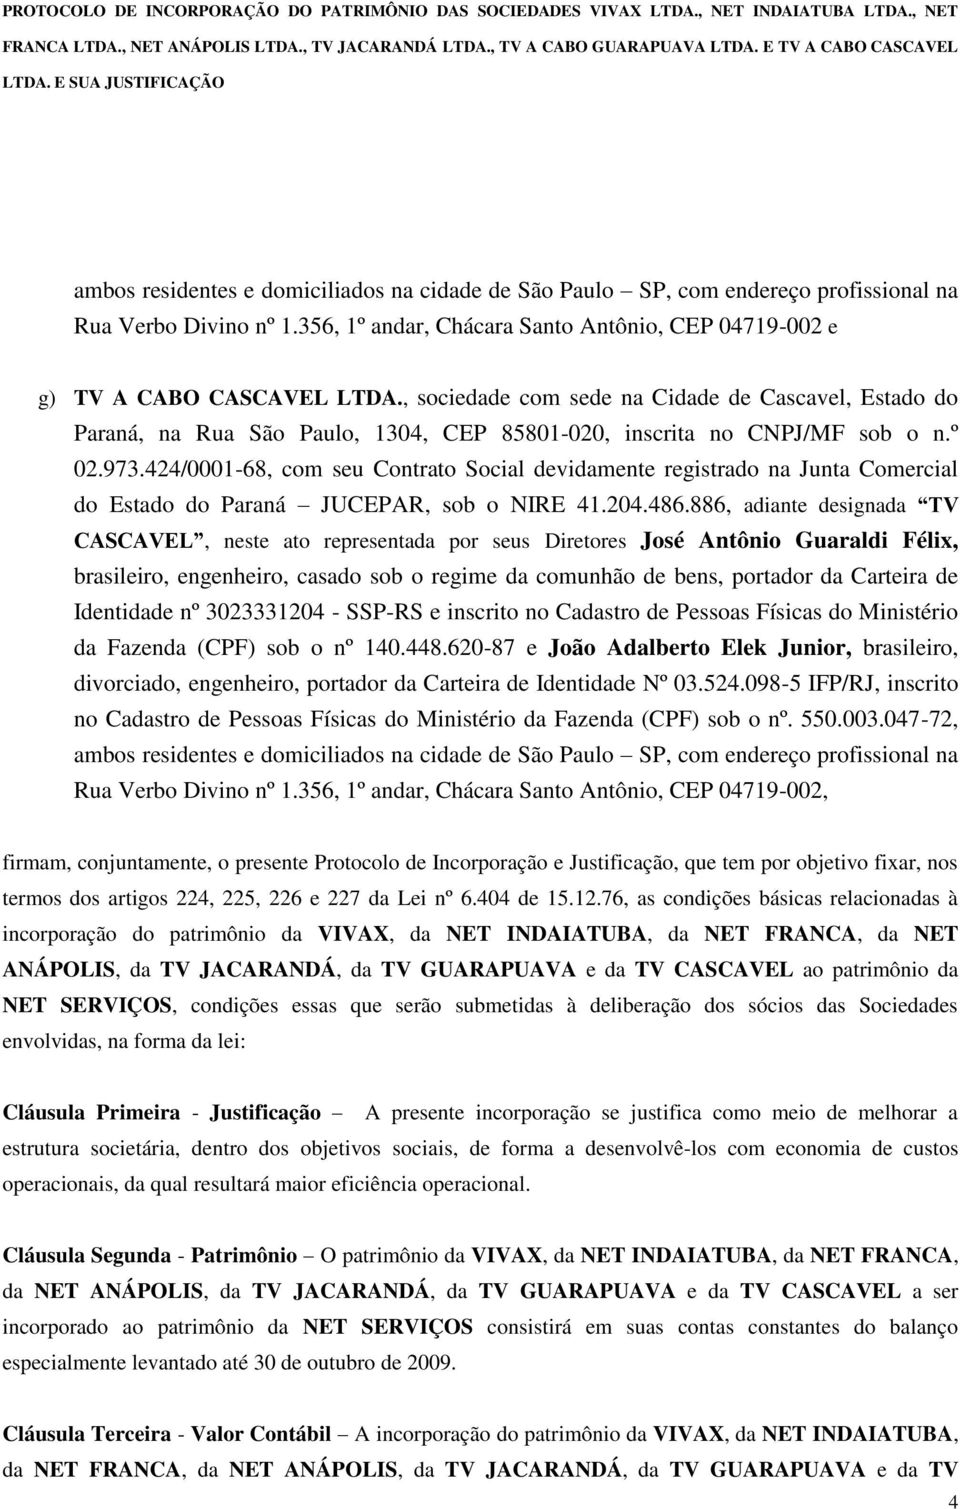 424/0001-68, com seu Contrato Social devidamente registrado na Junta Comercial do Estado do Paraná JUCEPAR, sob o NIRE 41.204.486.